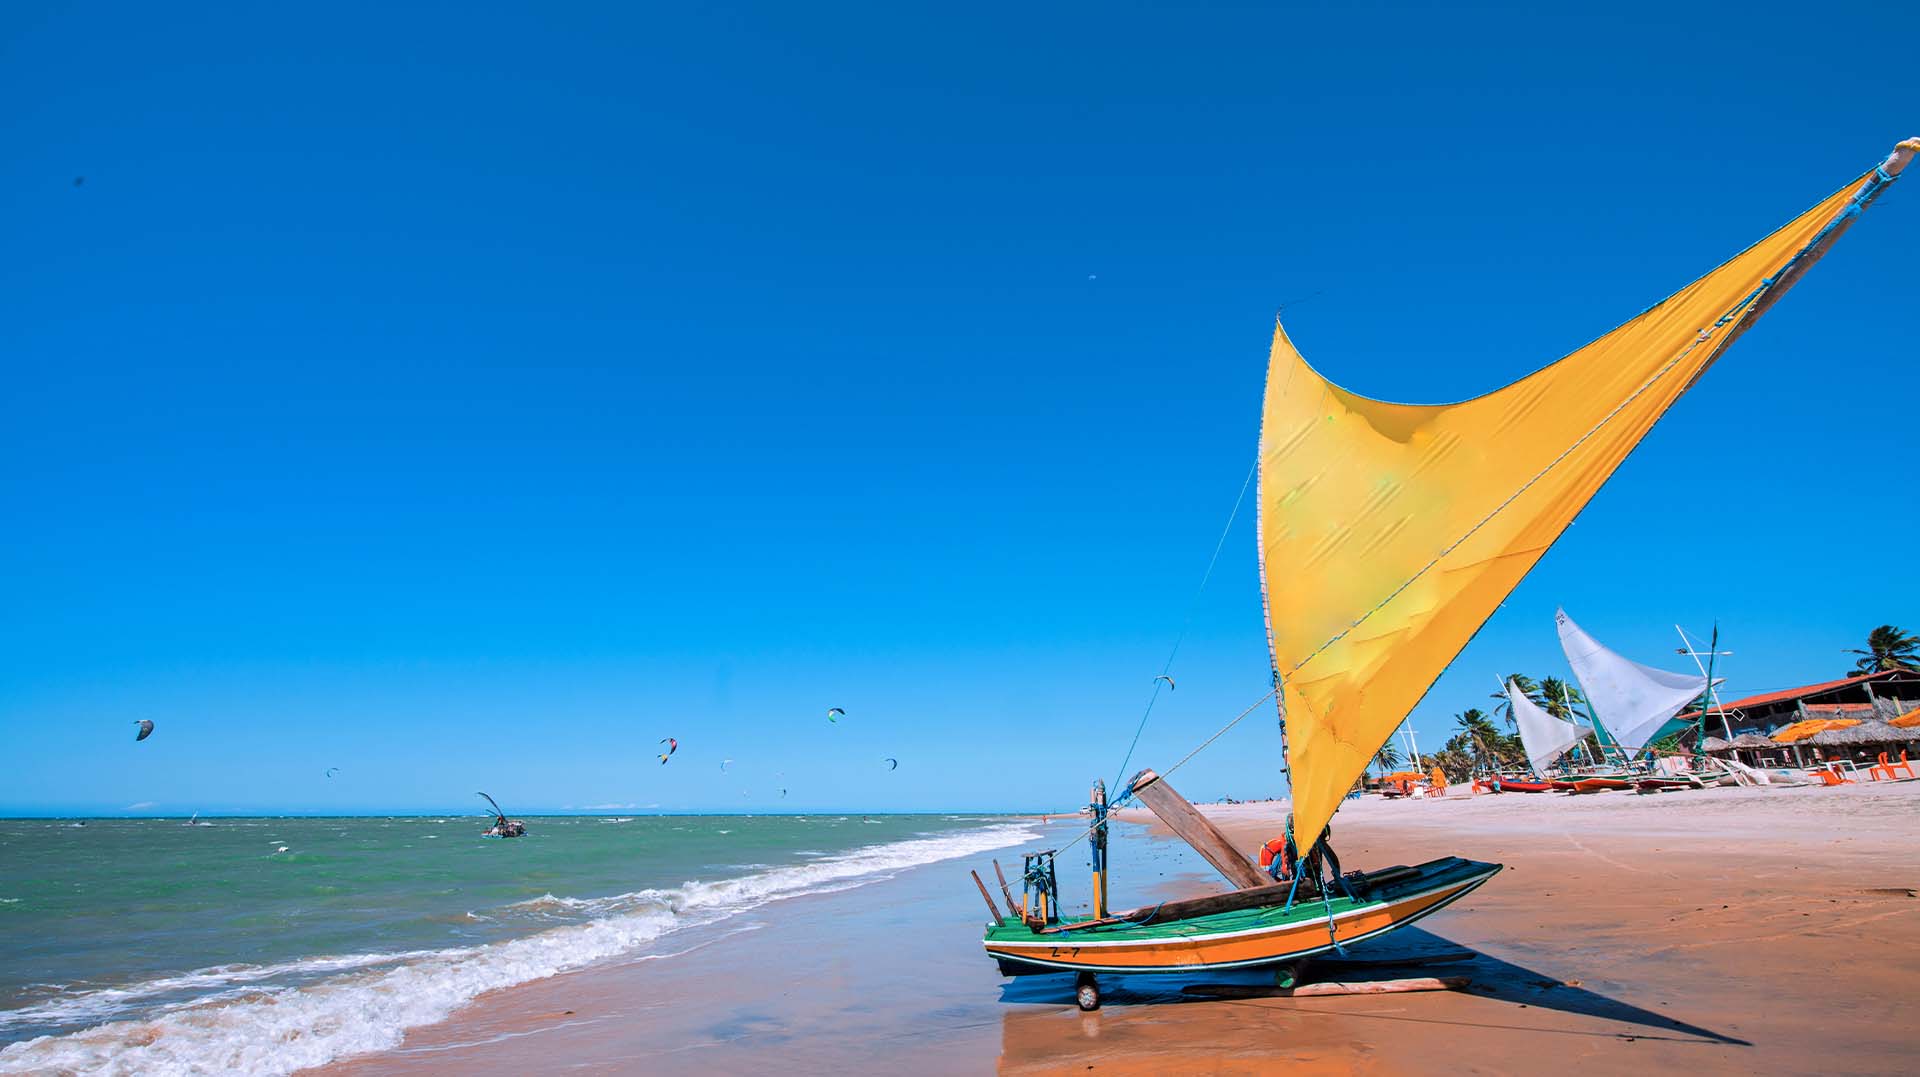 O que fazer em Cumbuco: descubra as belezas naturais de uma das mais belas praias do Brasil!